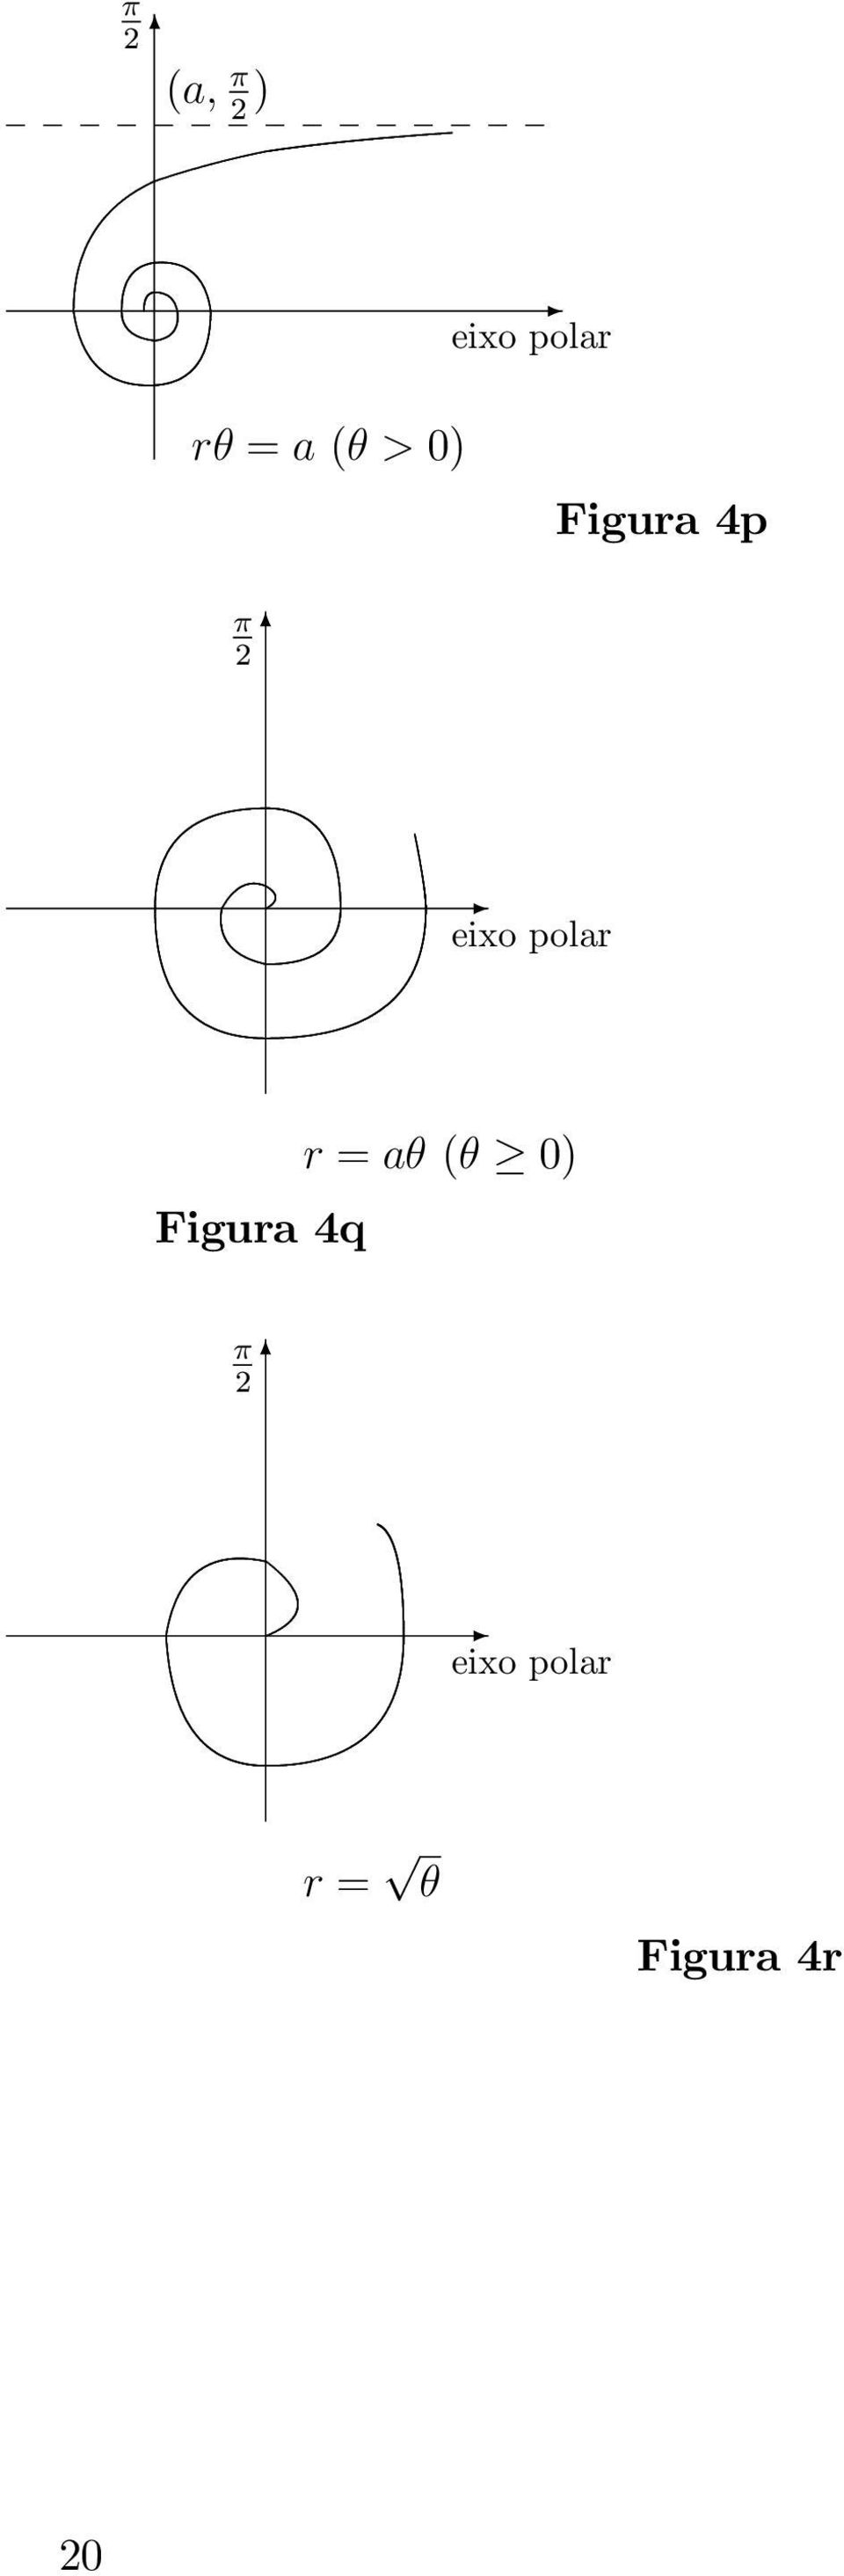 Figura 4q